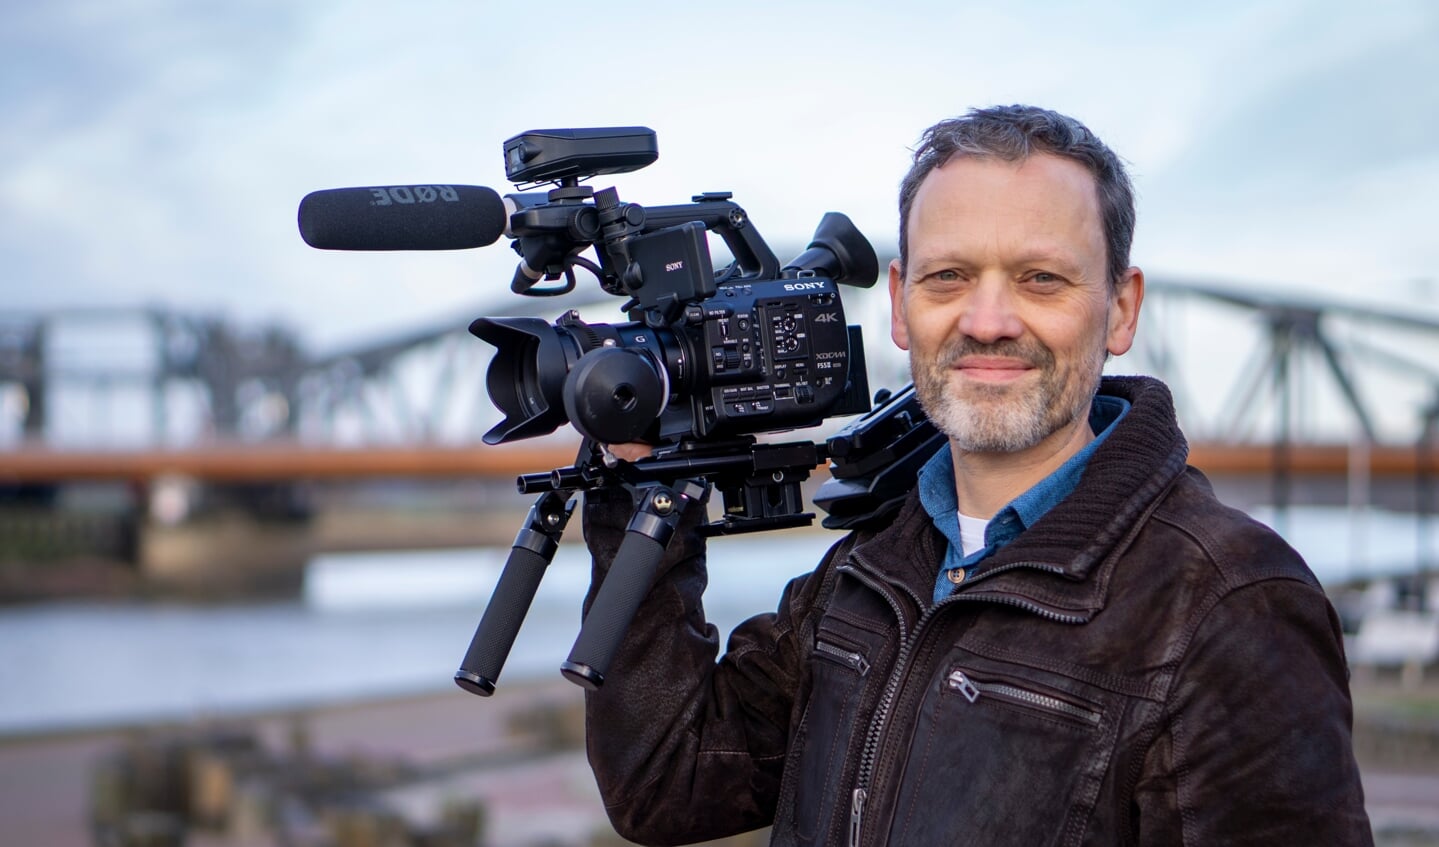 John Post maakt videoproducties. De drone gebruikt hij daarbij als 'tool'. Foto: Roy Huetink